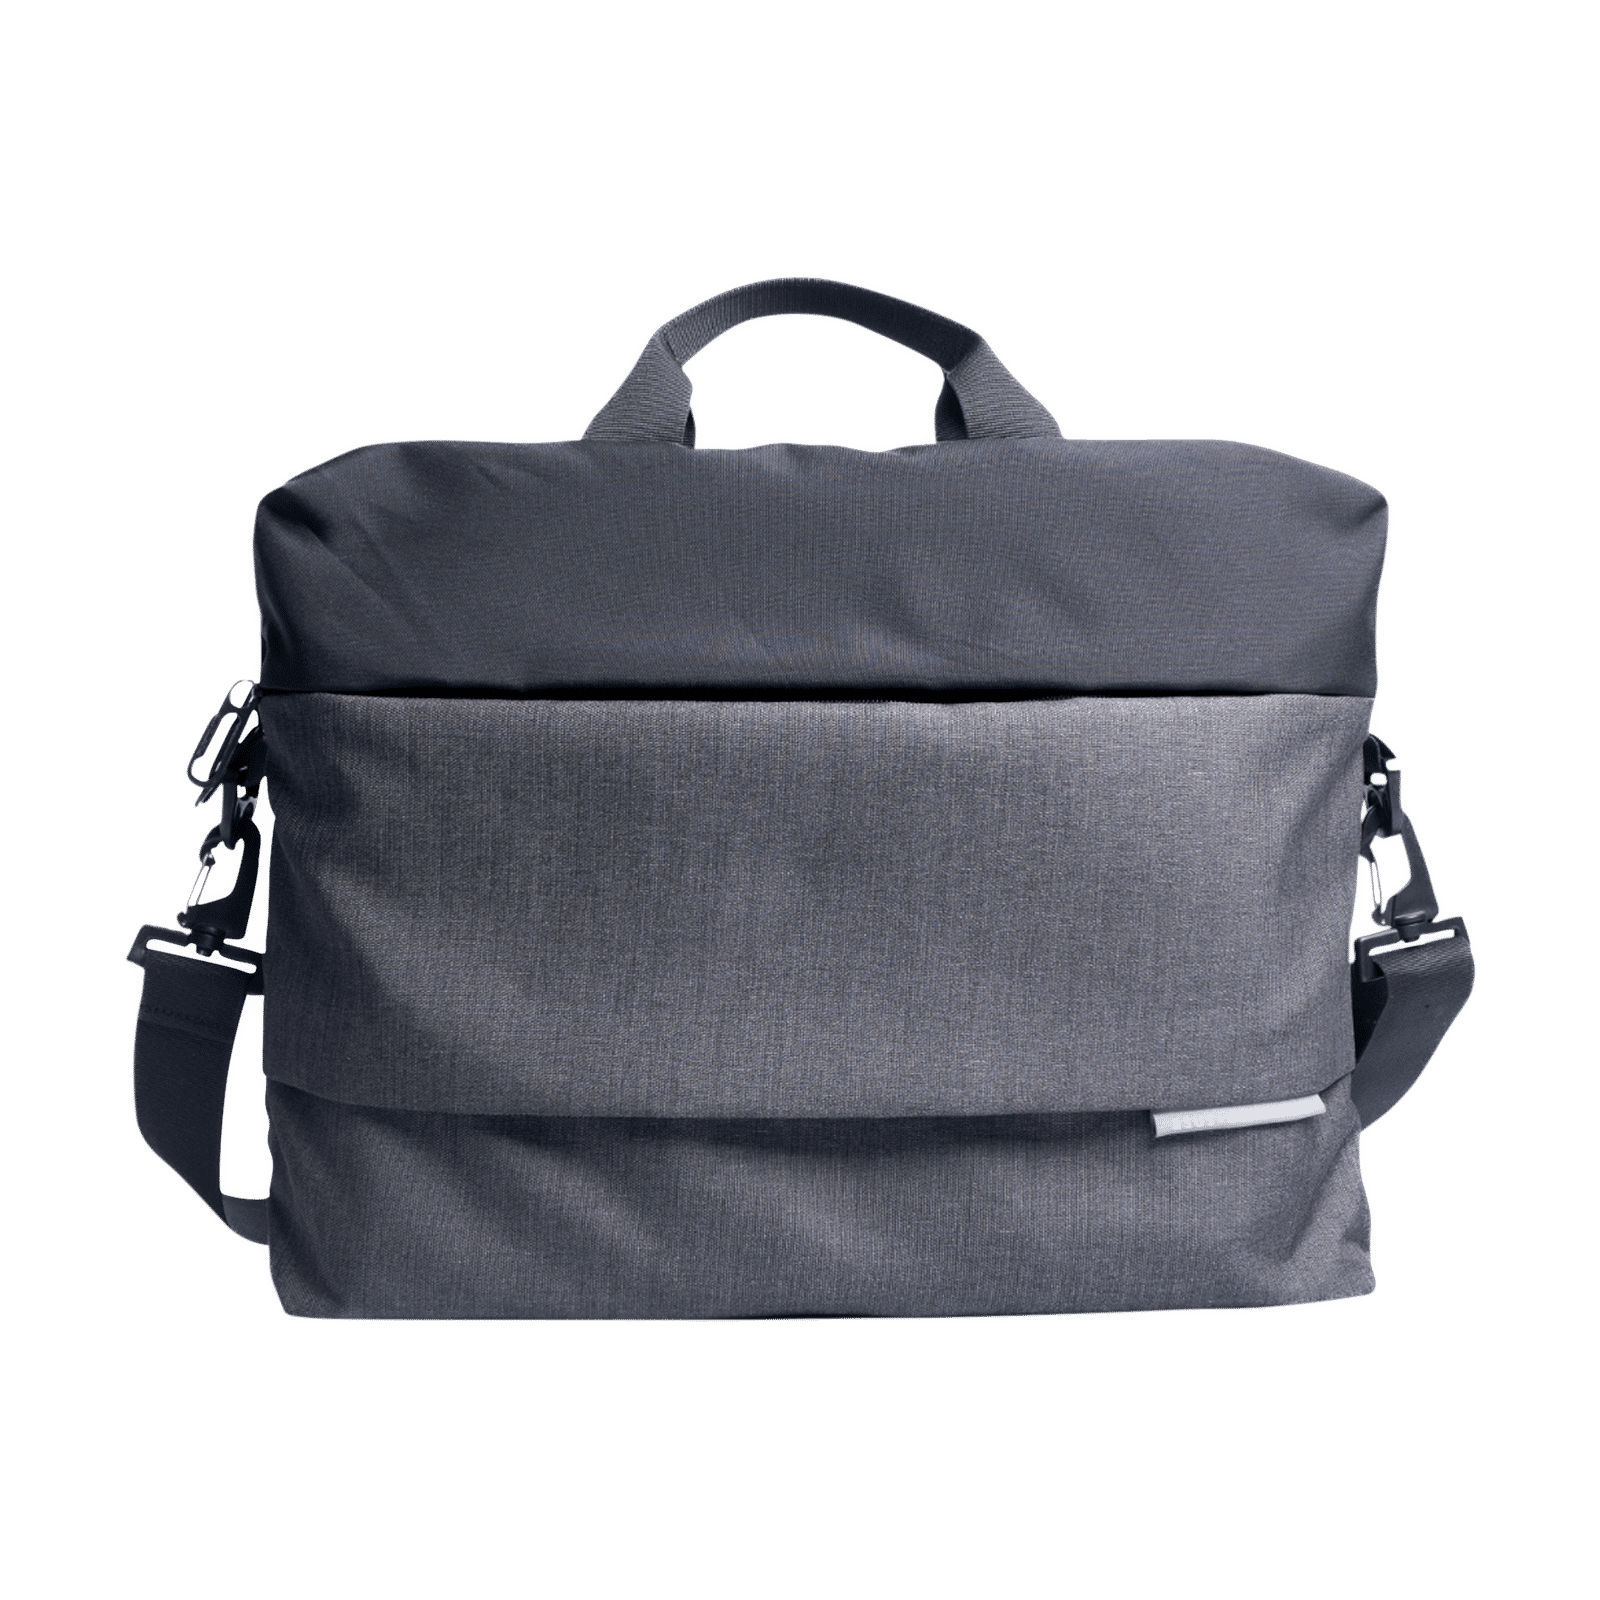 Black Adjustable Shoulder Bag Strap with Double Hooks for Laptop ComputYR